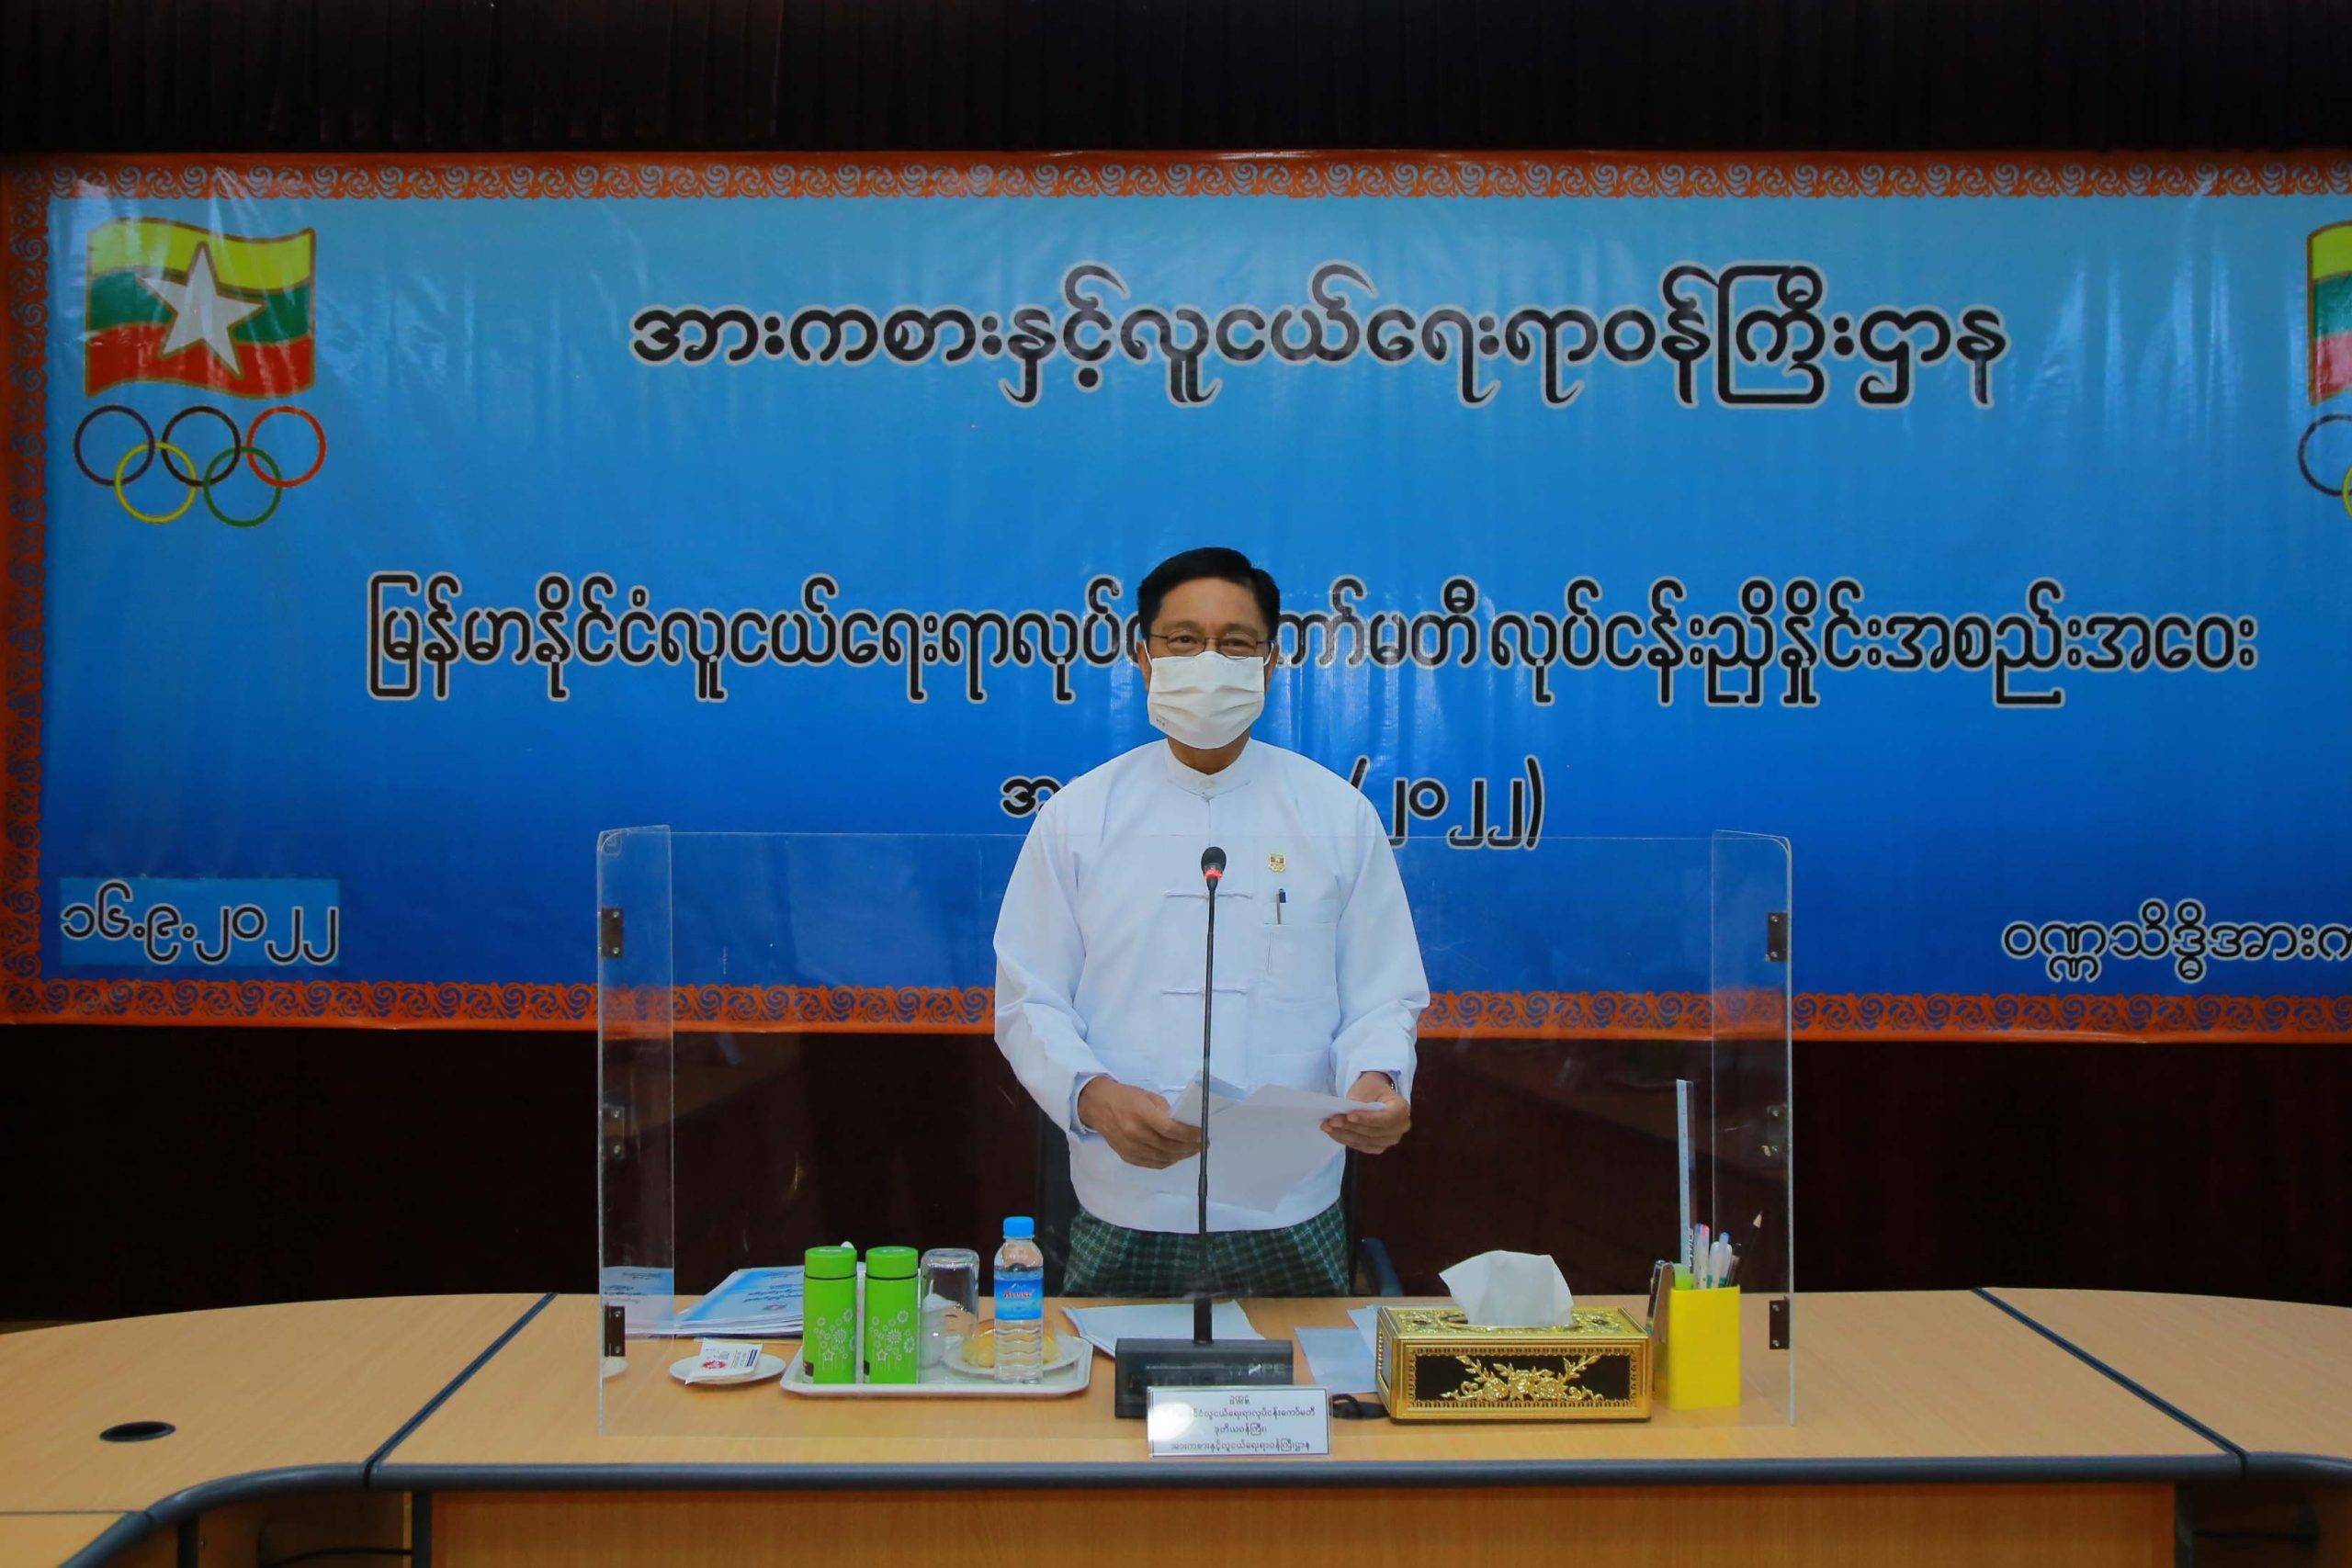 အားကစားနှင့်လူငယ်ရေးရာဝန်ကြီးဌာန၊  ဒုတိယဝန်ကြီး ဒေါက်တာစိုးဝင်း ဒုတိယအကြိမ်  မြန်မာနိုင်ငံလူငယ်ရေးရာလုပ်ငန်းကော်မတီ (၂/၂၀၂၂) လုပ်ငန်းညှိနှိုင်း  အစည်းအဝေးသို့တက်ရောက်